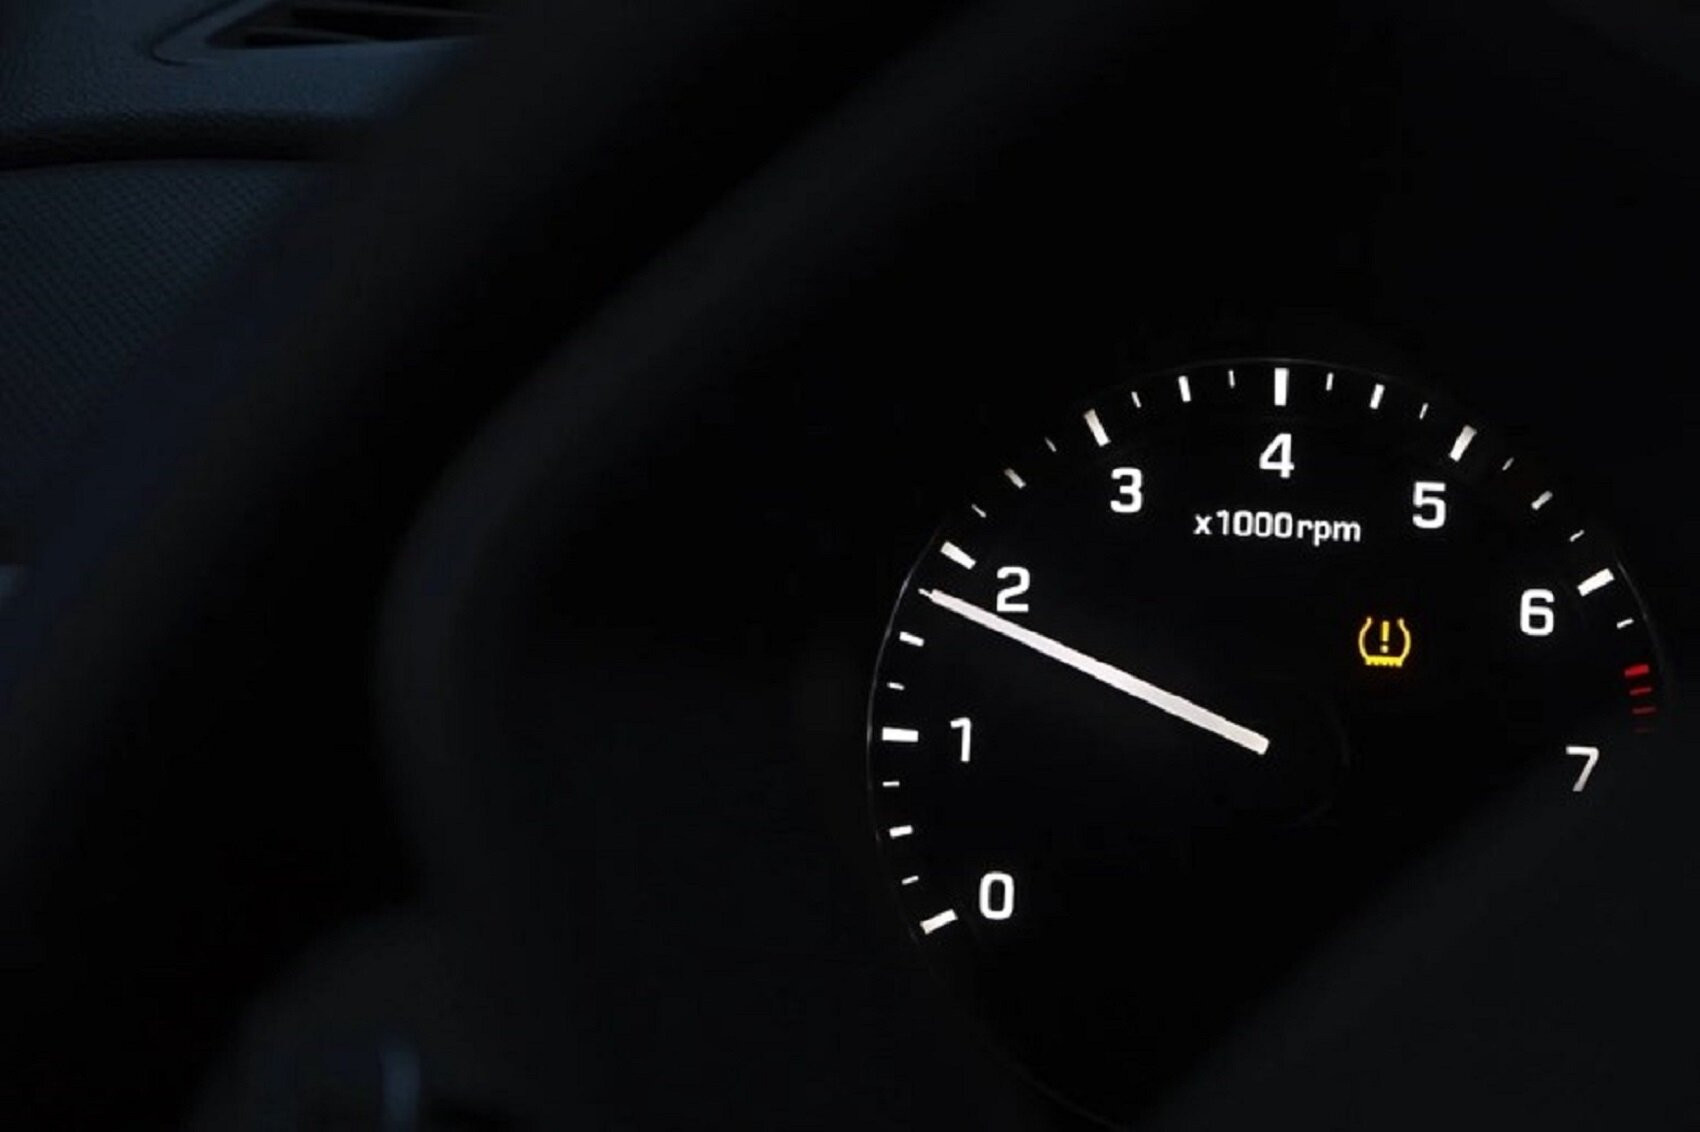 Khi xe chạy bình thường thì vòng tua máy lý tưởng sẽ thay đổi tùy theo cấp số trên xe. (Ảnh minh hoạ).